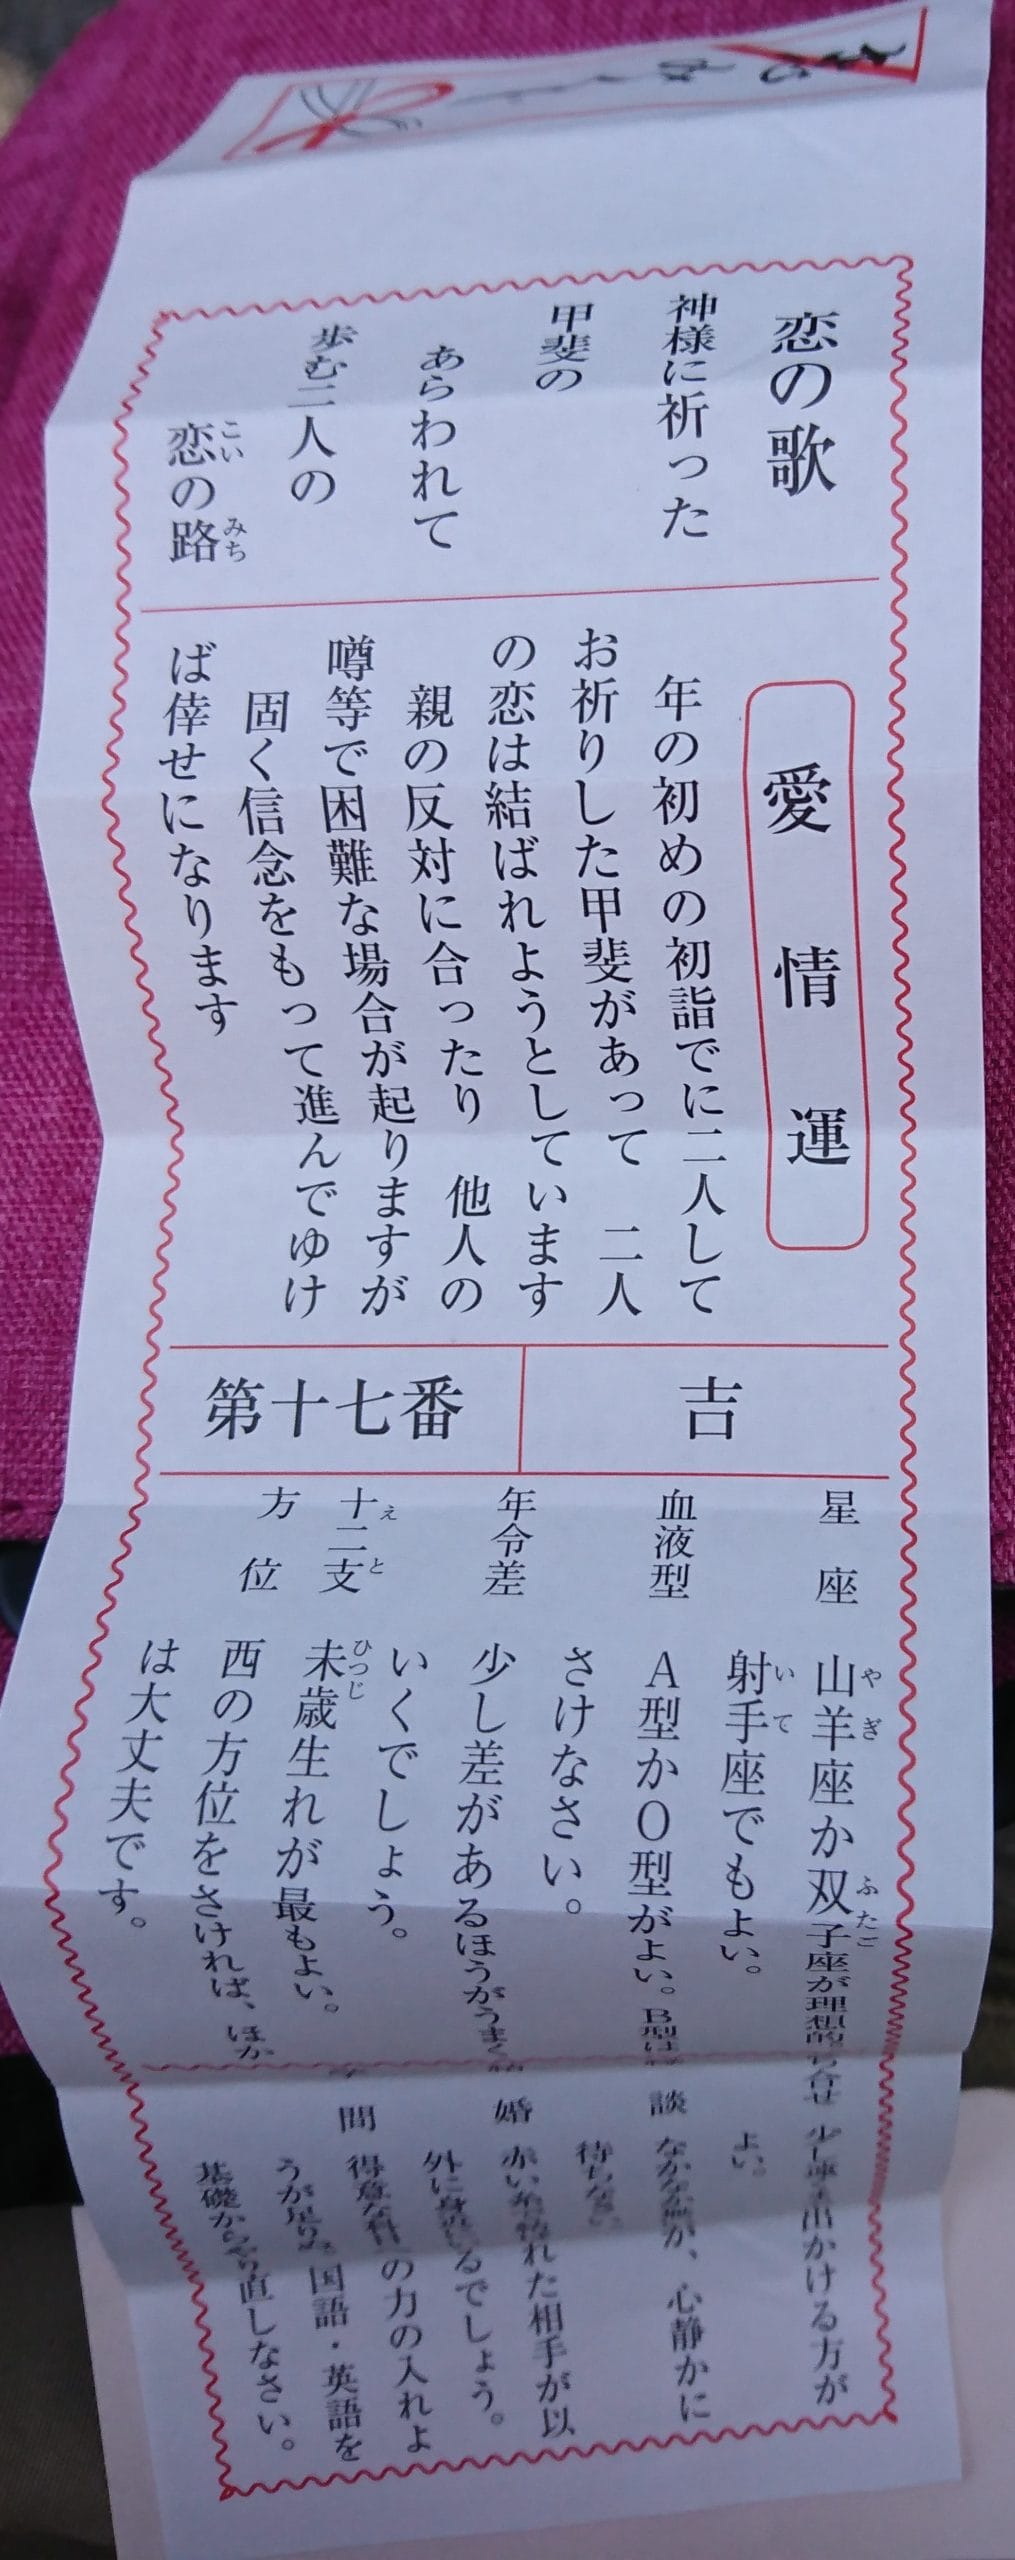 東京大神宮で復縁が叶う 大人気の恋みくじ 願い文で願望成就 幸せになる